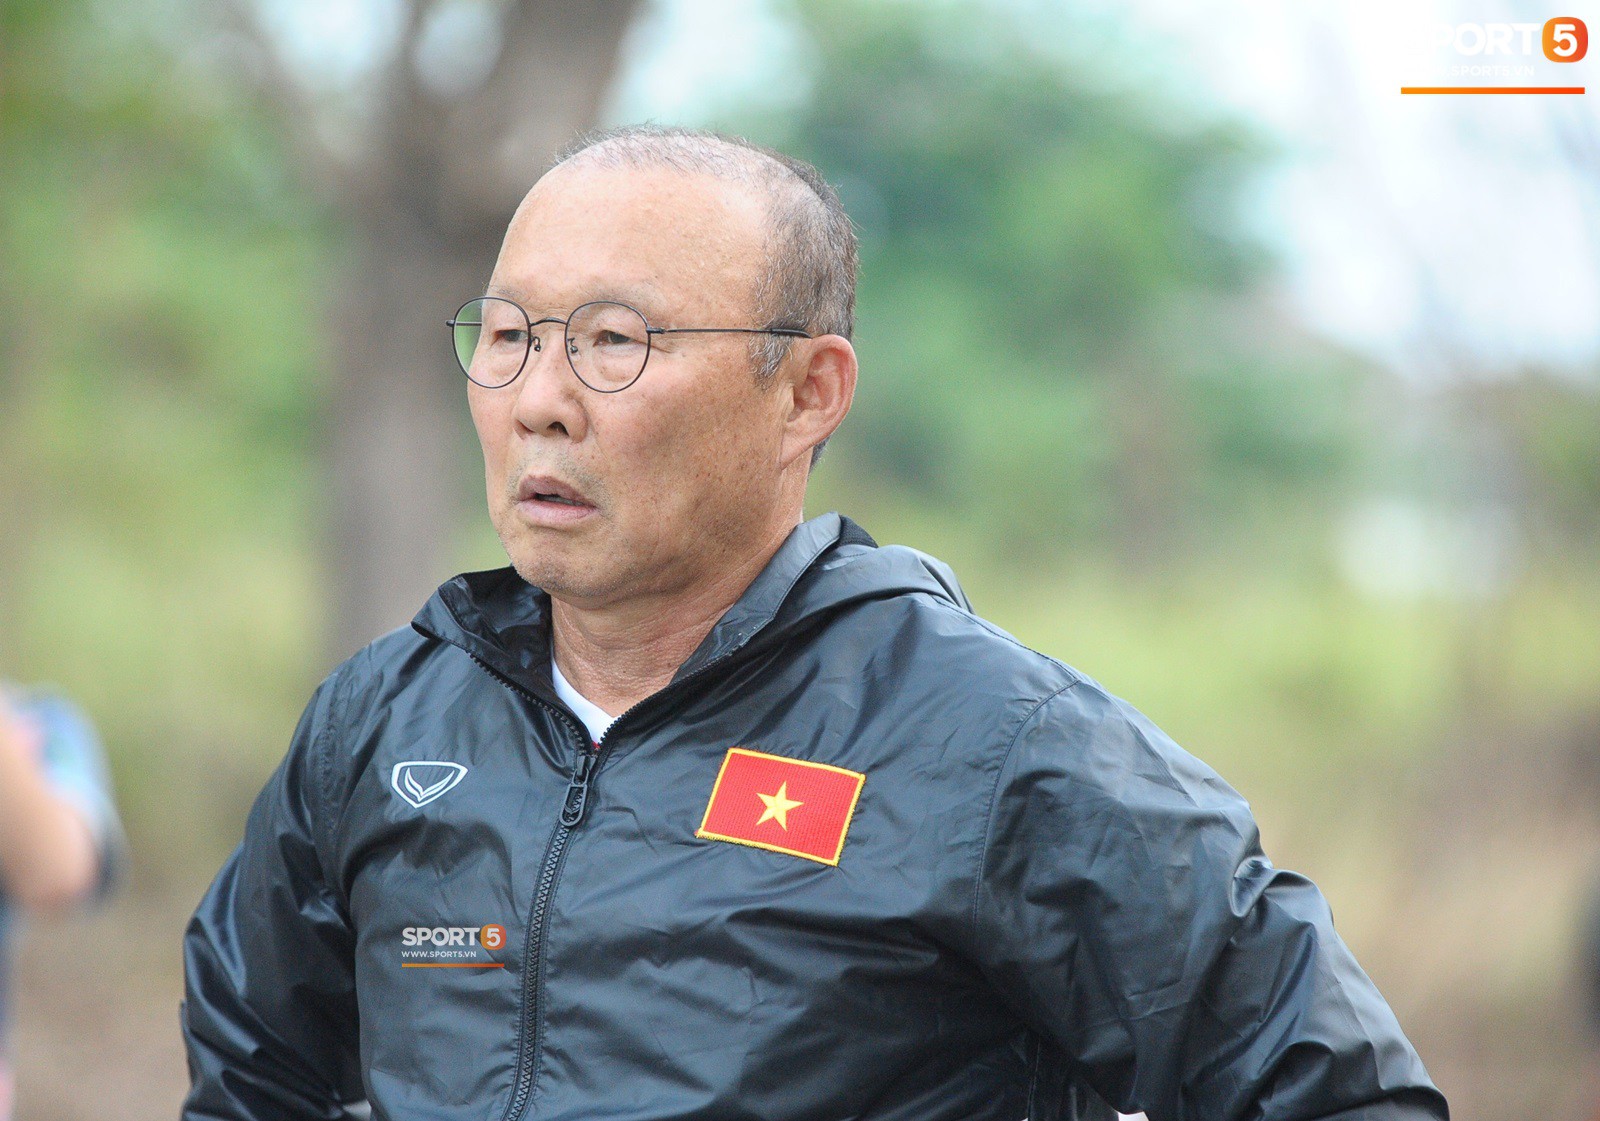 Những thiệt thòi của thủ môn U23 Việt Nam khi tập ở sân bê tông - Ảnh 7.